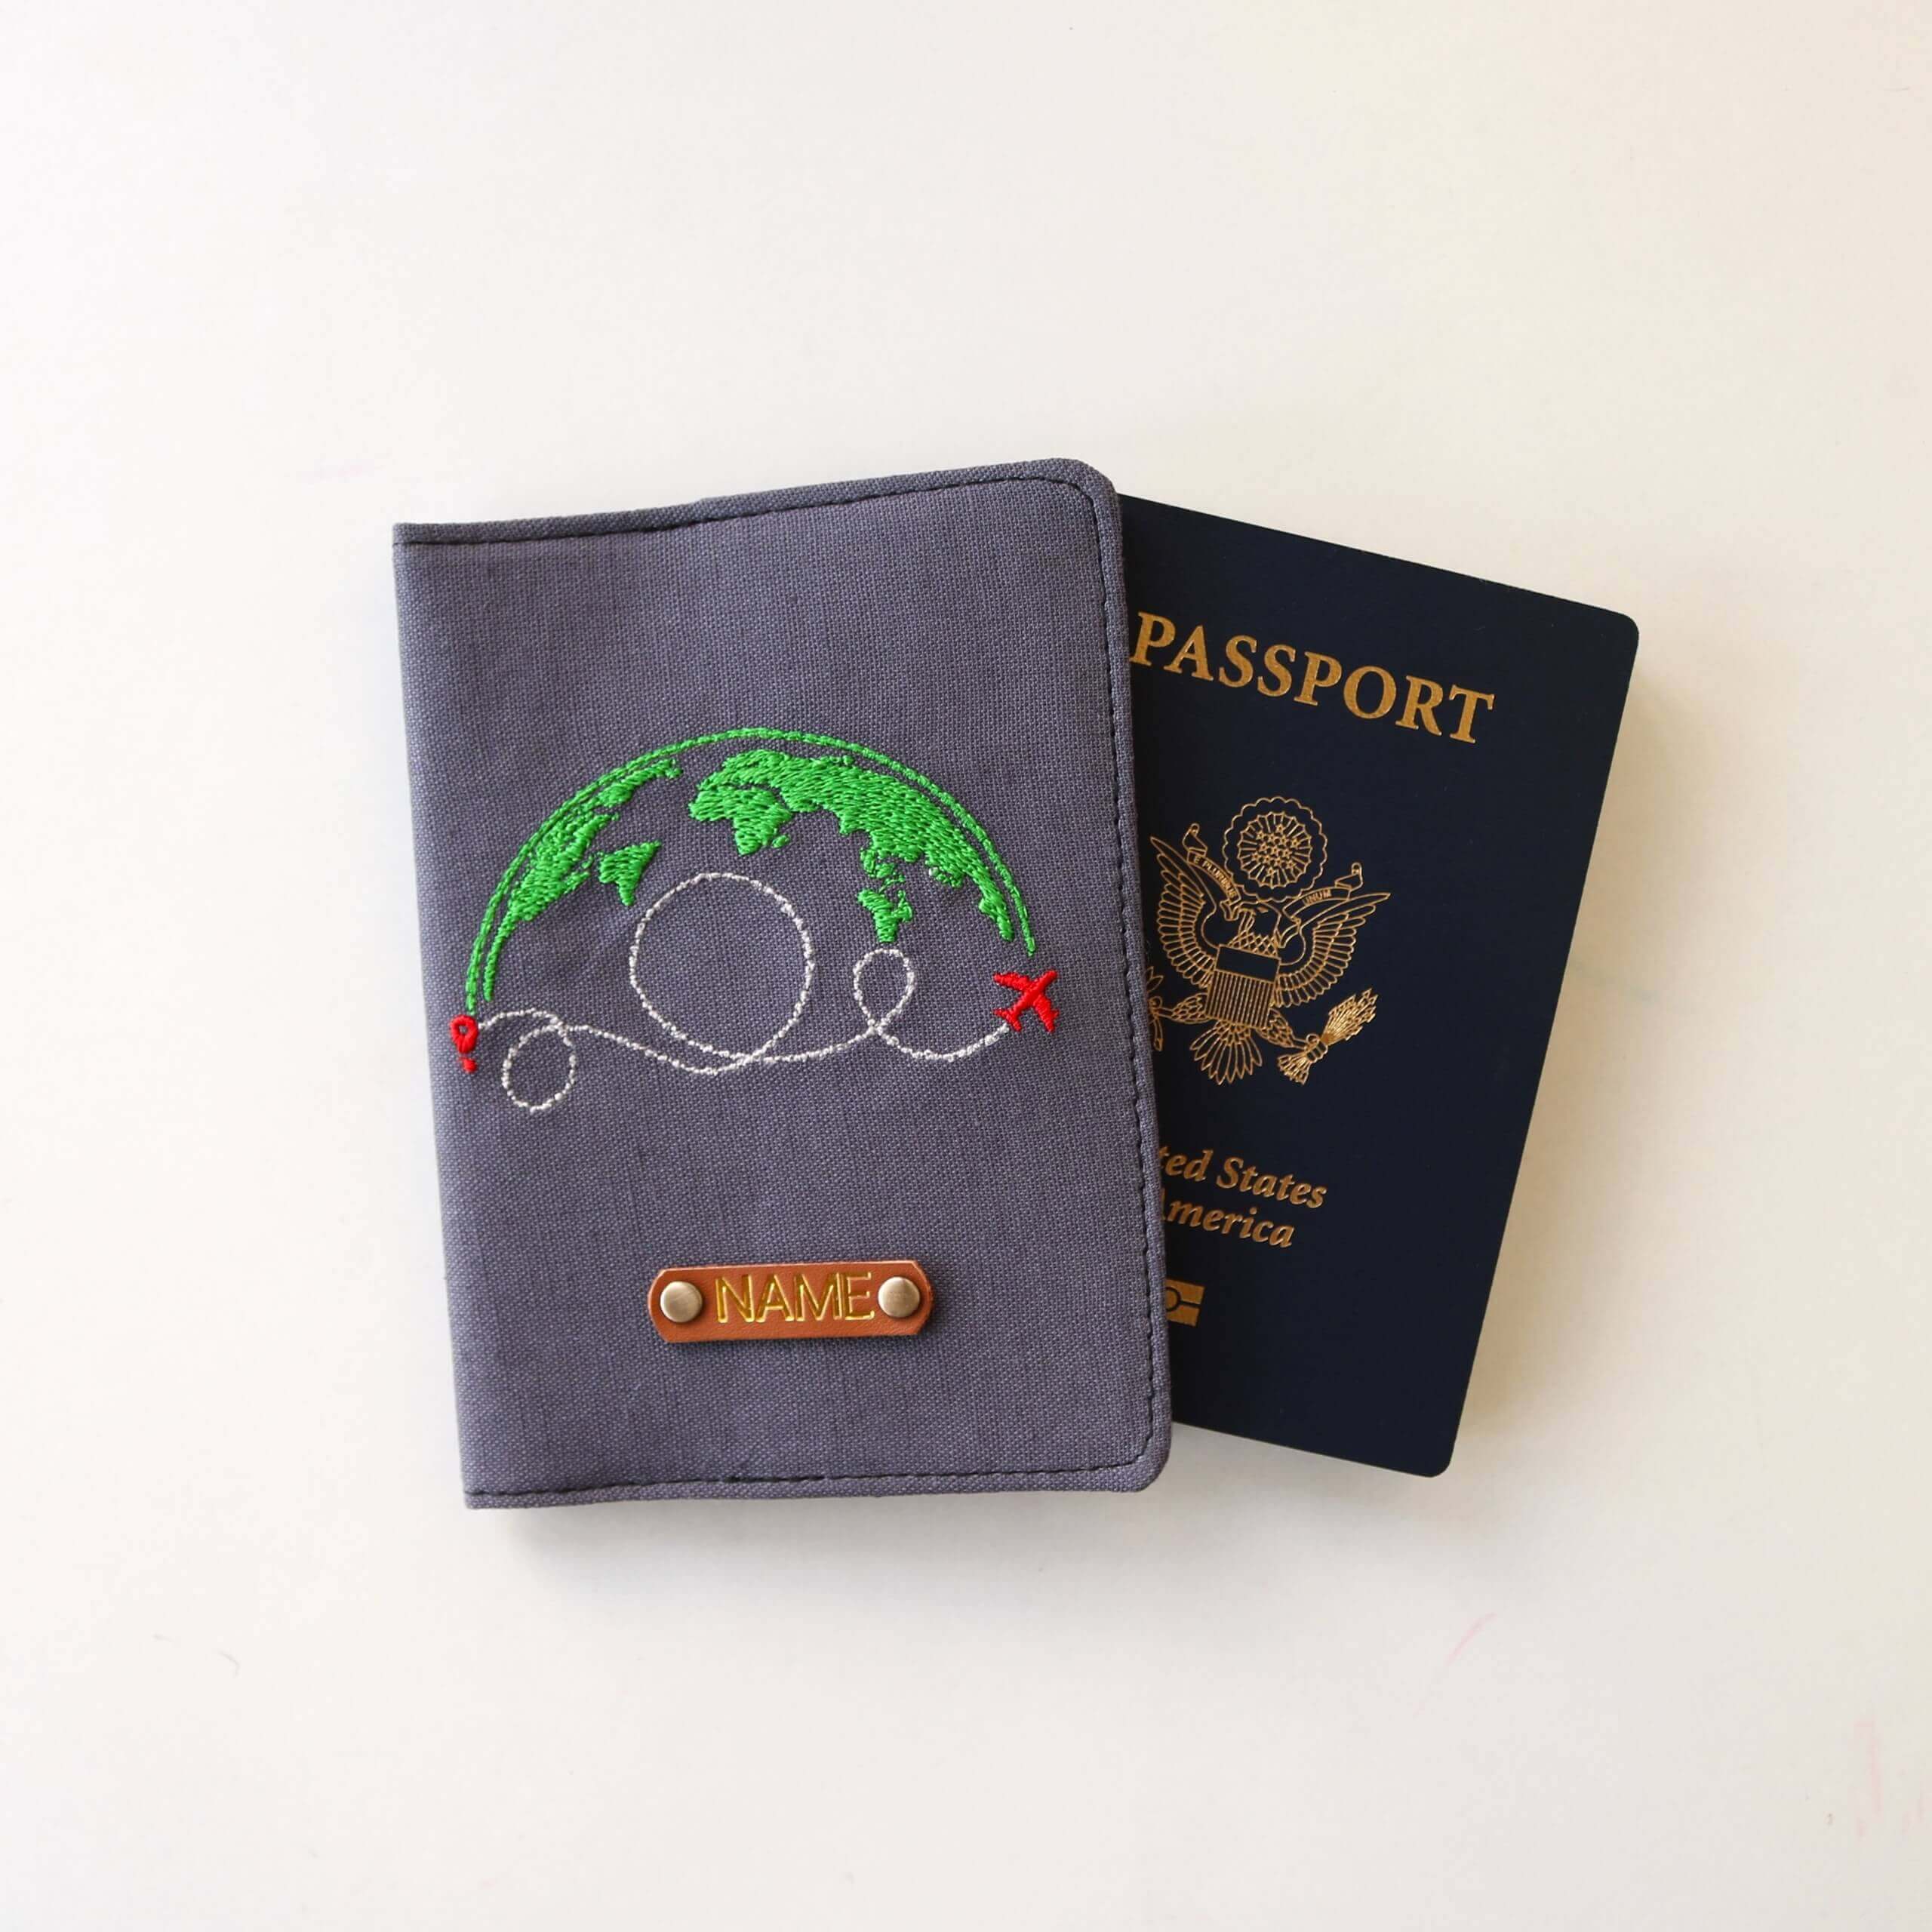 Passport Cover Travel around the World